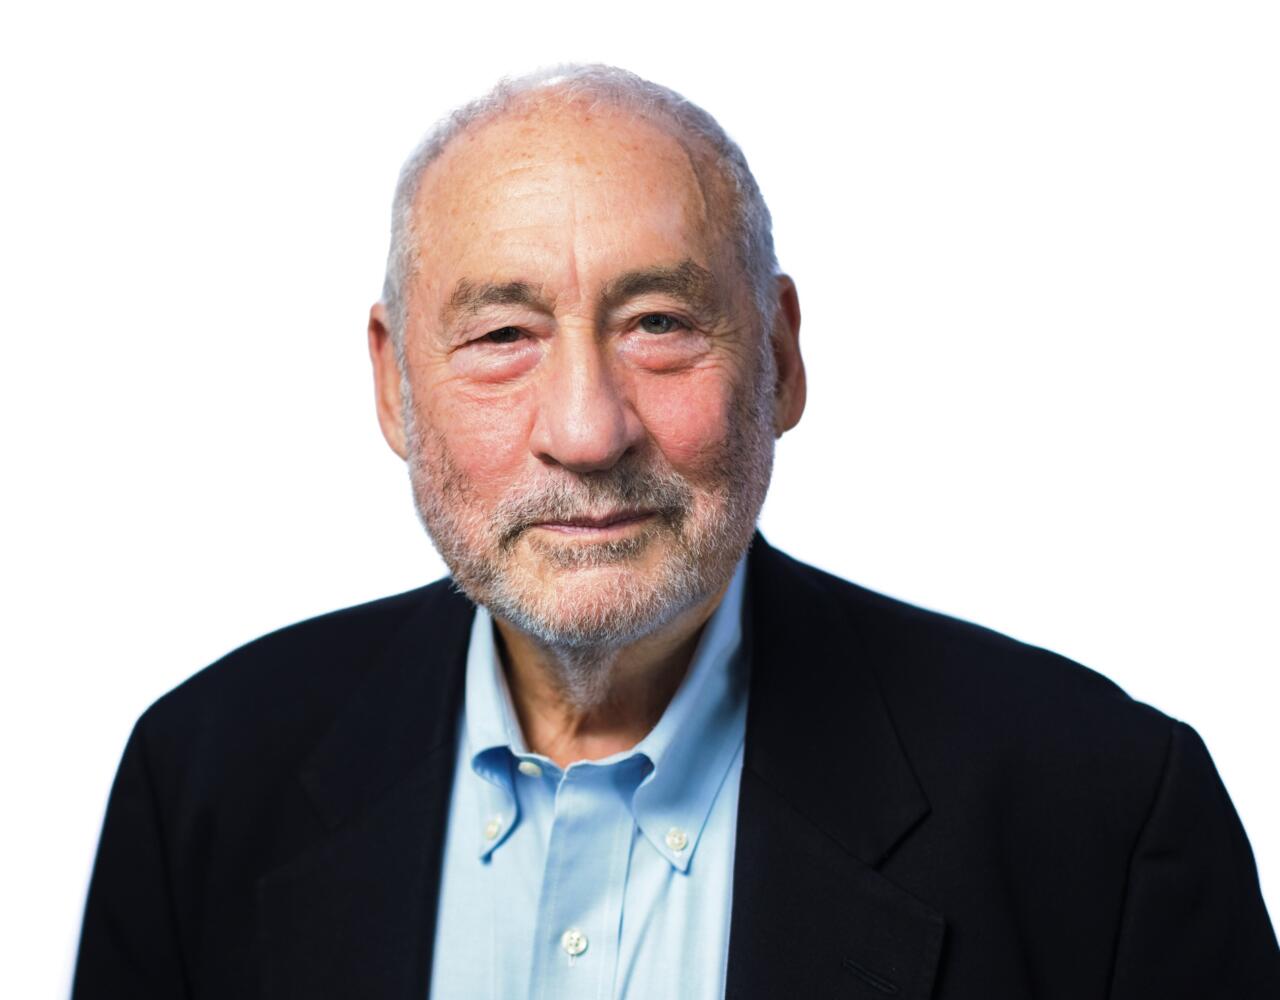 Joseph E. Stiglitz headshot